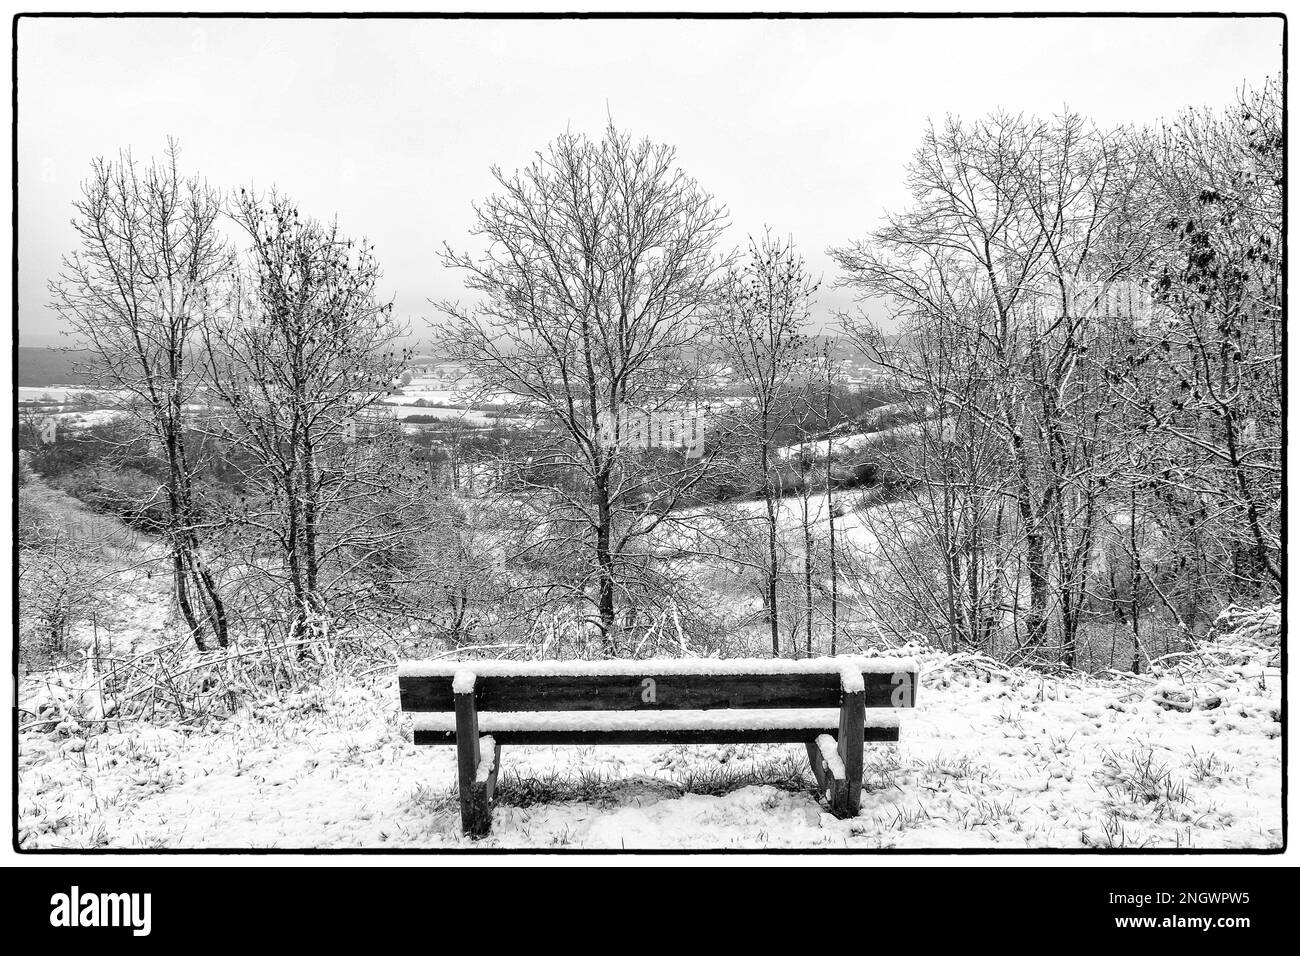 Dünne Schicht Schnee an einem bewölkten Tag - Bank, um die Landschaft zu sehen | Fine couche de neige un jour nuageux - Banc pour Admirer le paysage Stockfoto